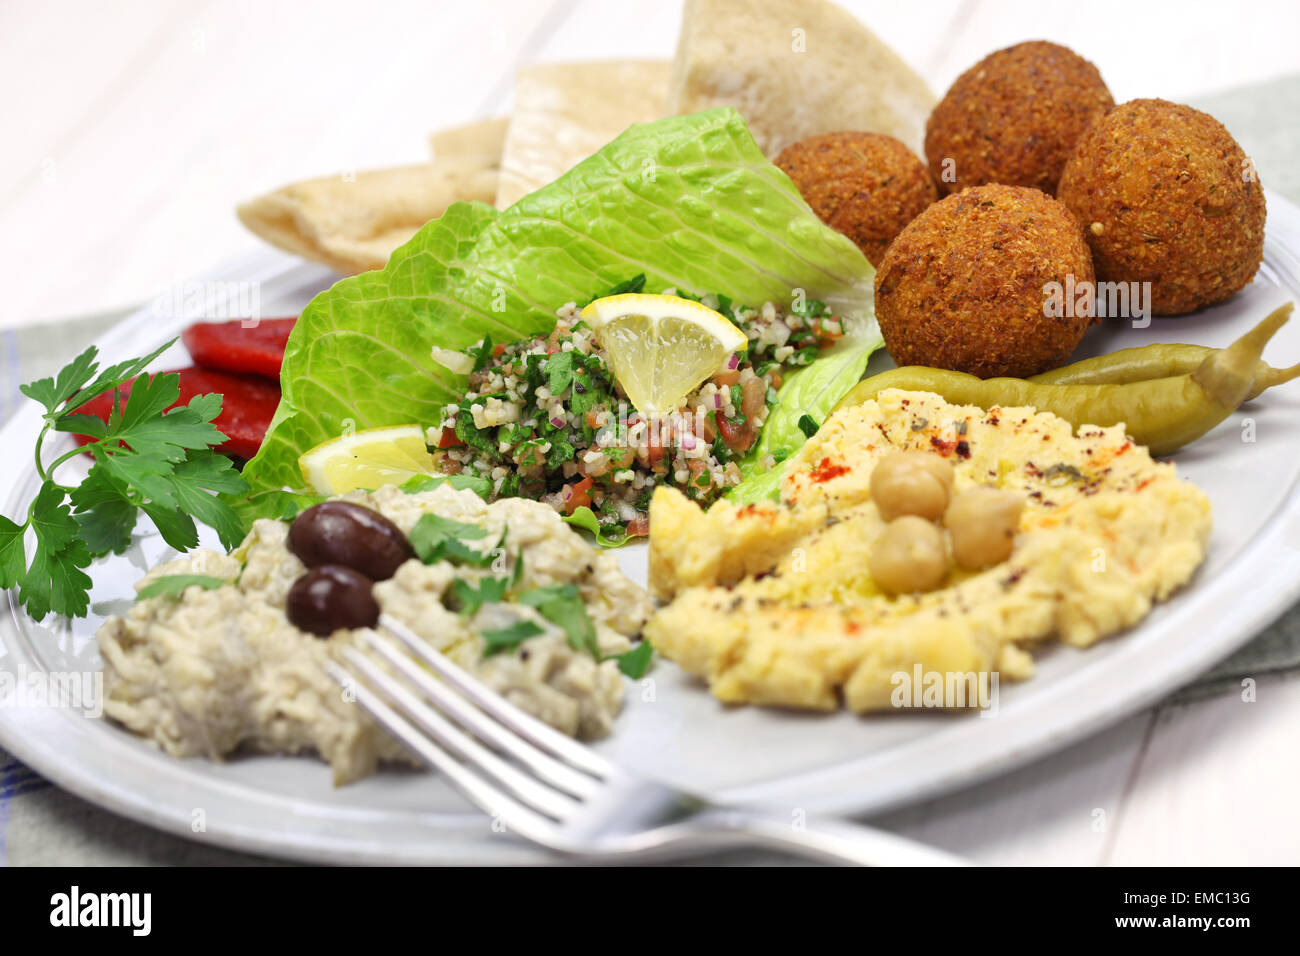 El hummus, falafel, baba ghanoush, tabbouleh y pita, cocina de oriente medio Foto de stock